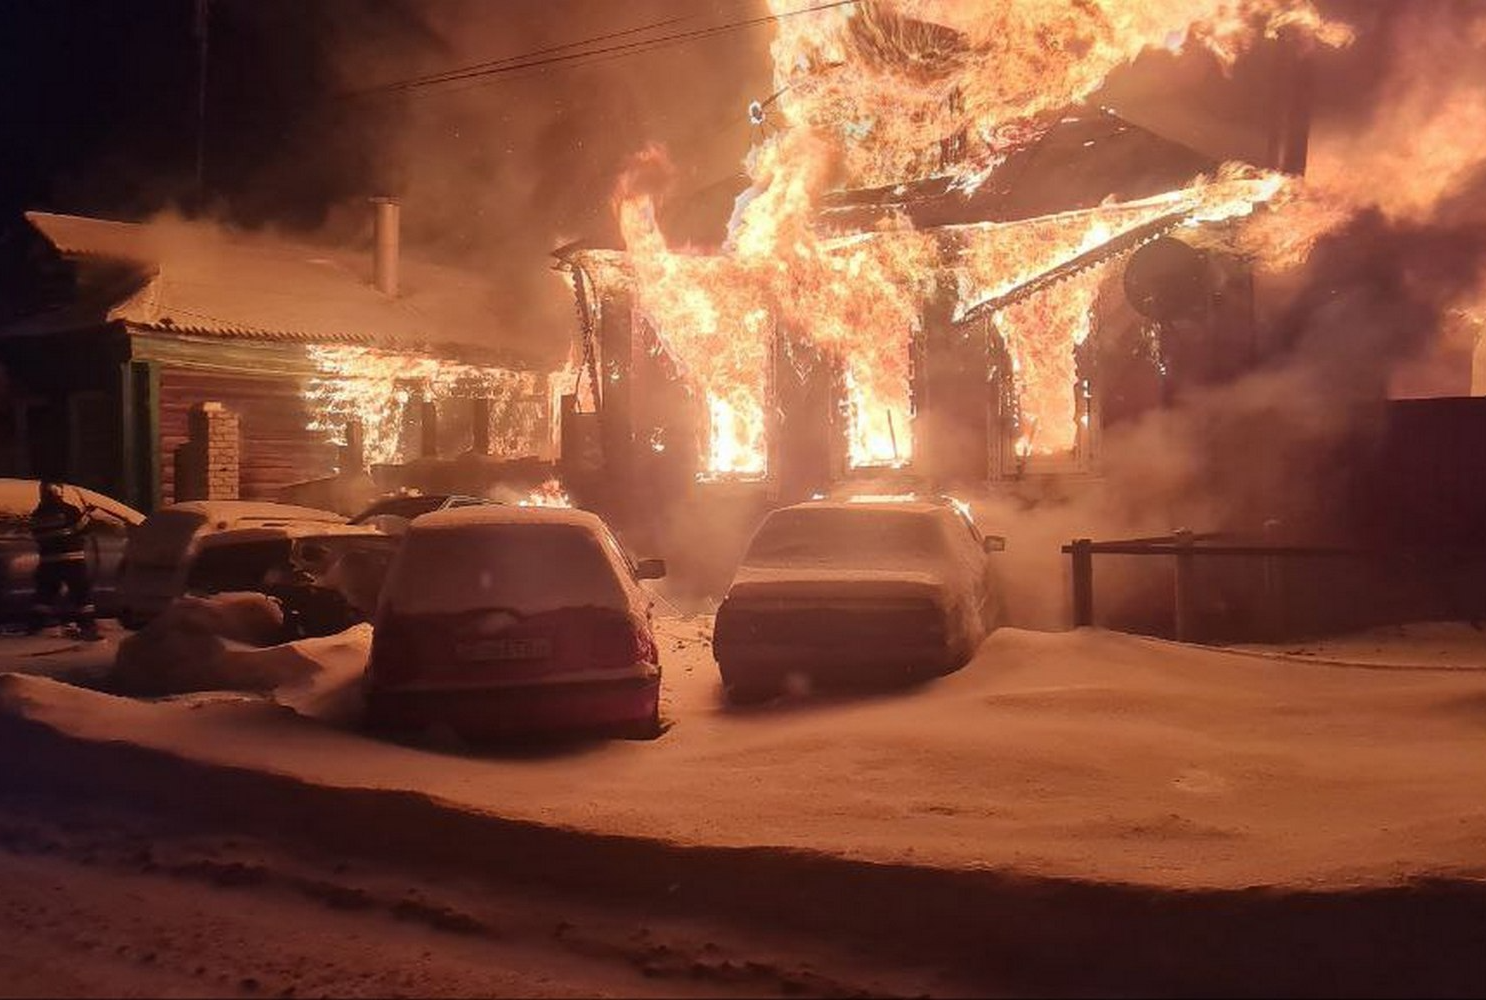 Частный жилой дом сгорел в посёлке Белоомут городского округа Луховицы